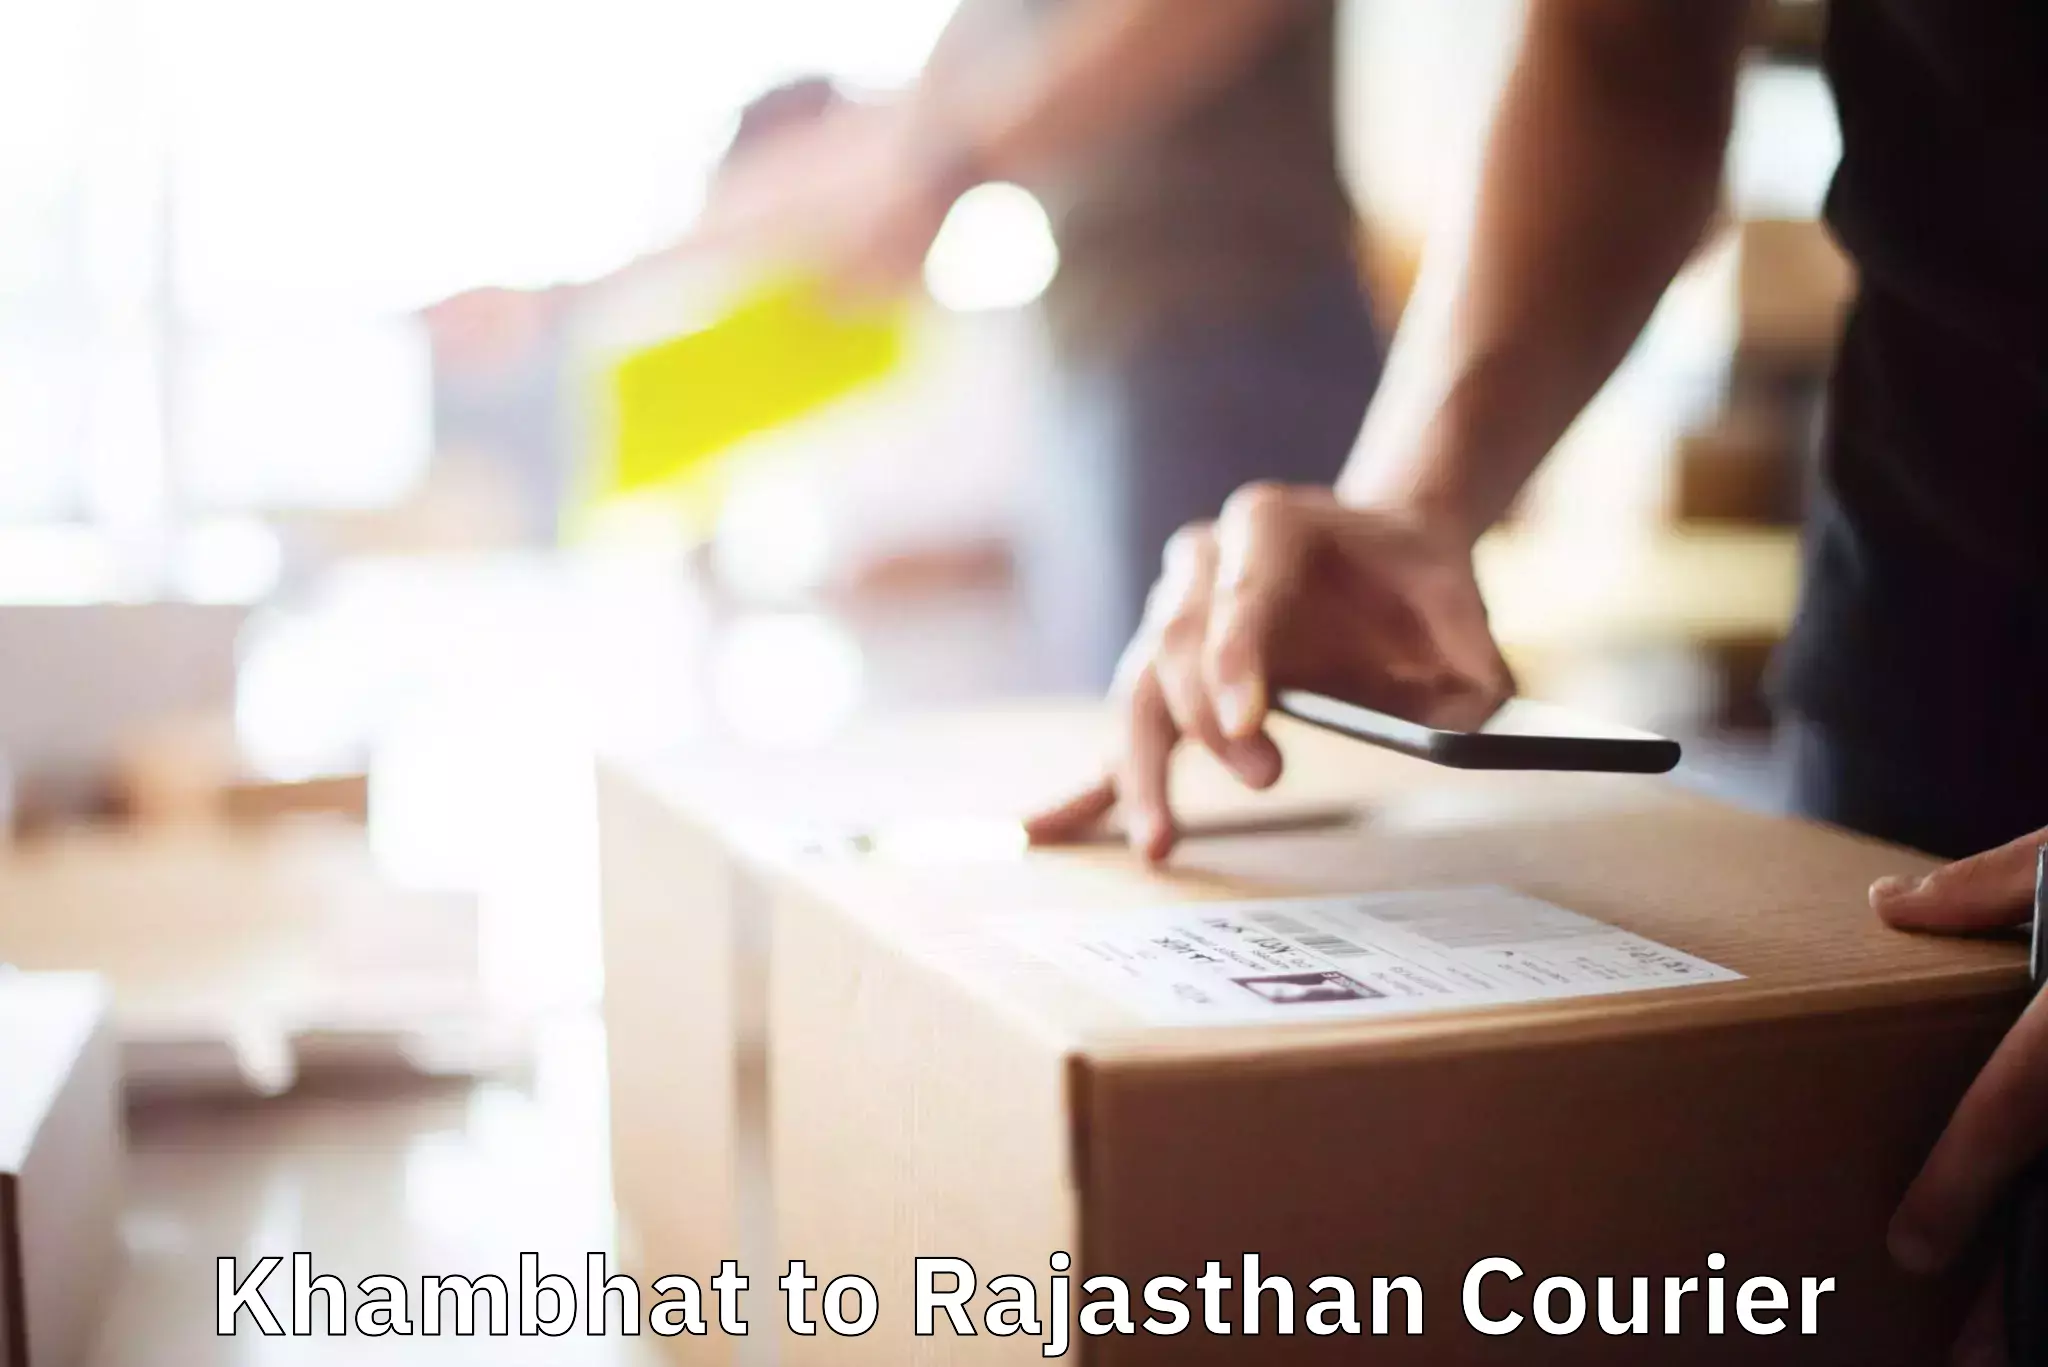 Furniture moving experts Khambhat to Rajasthan